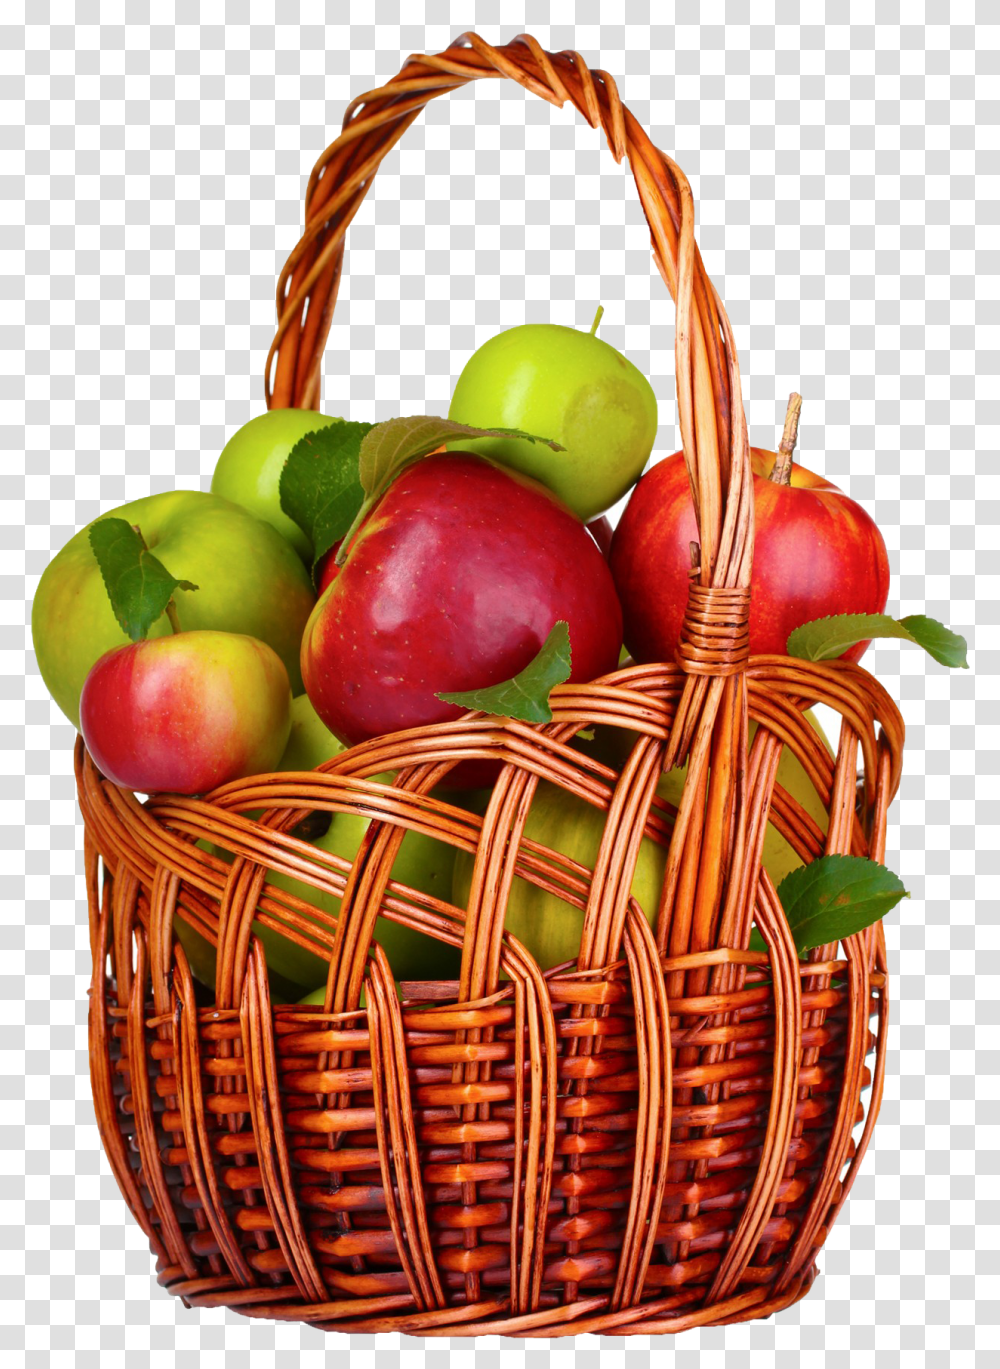 Apple Fruit Apple Basket, Plant, Food, Shopping Basket Transparent Png